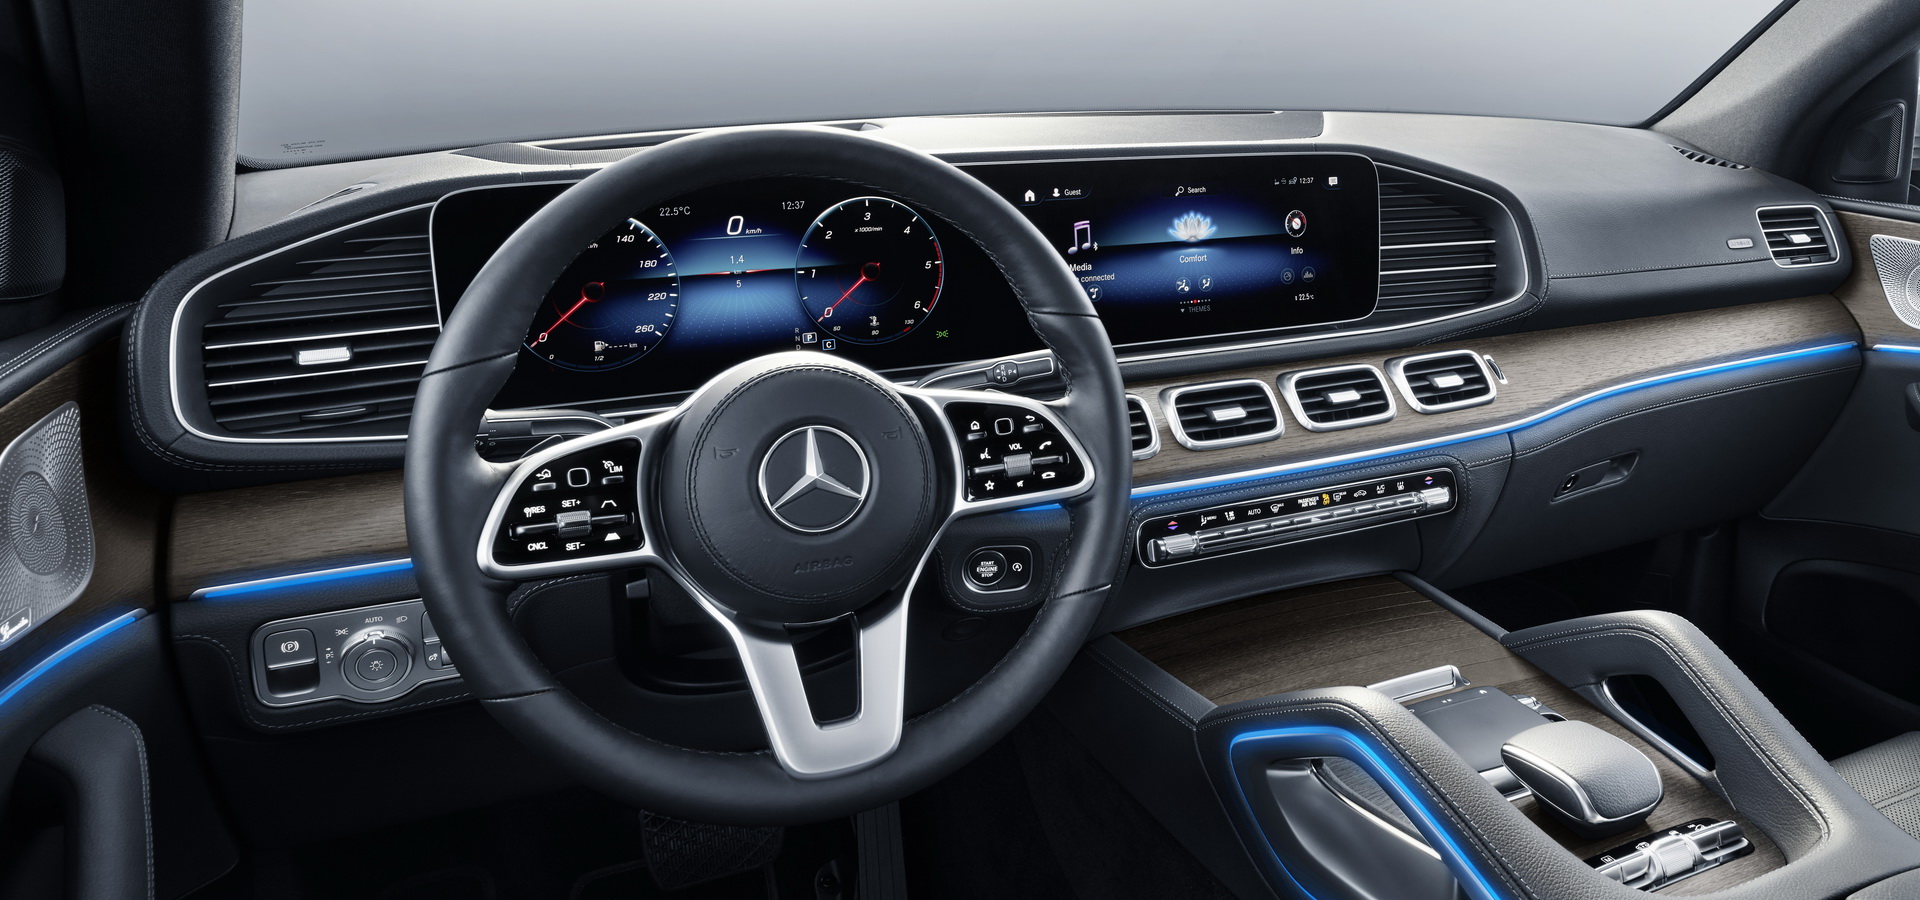 2020 Mercedes Gle Coupe Vs Predecessor An Upgrade Worth